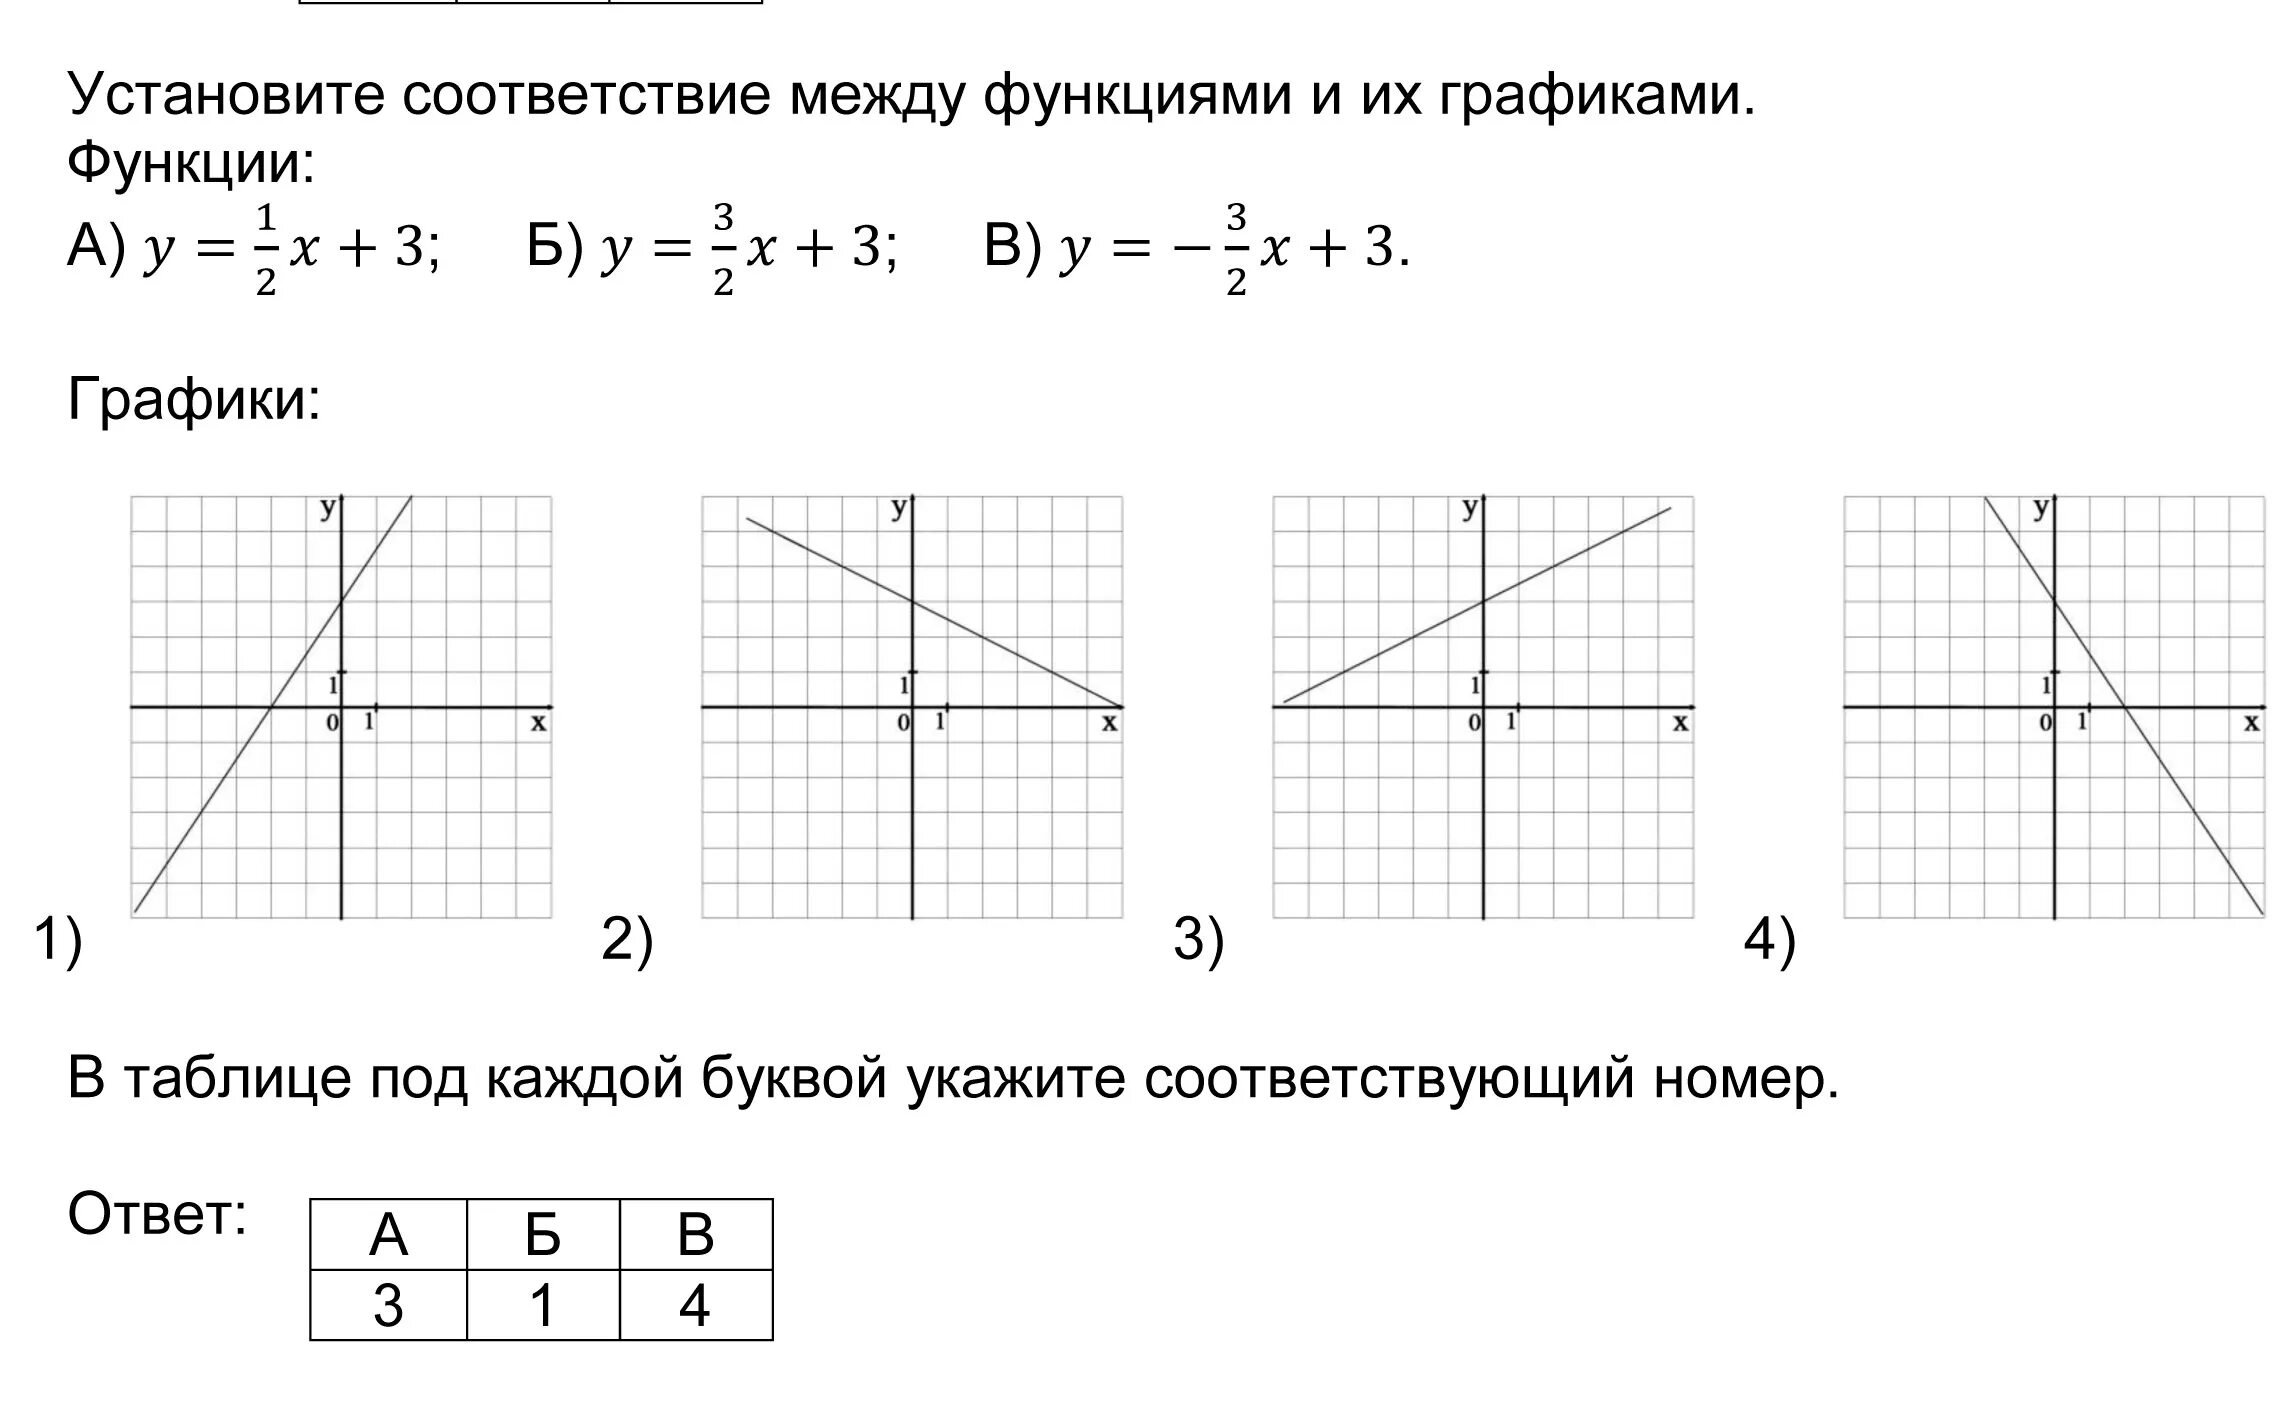 Y 1 9x b 2 13. Установить соответствие между функцией и графиком y=-x+2. Установите соответствие между функциями и их графиками у 2 3х-5. Установите соответствие между функциями и их графиками функции. Установите соответствие между функциями и их графиками y x2-2x y x2+2x.